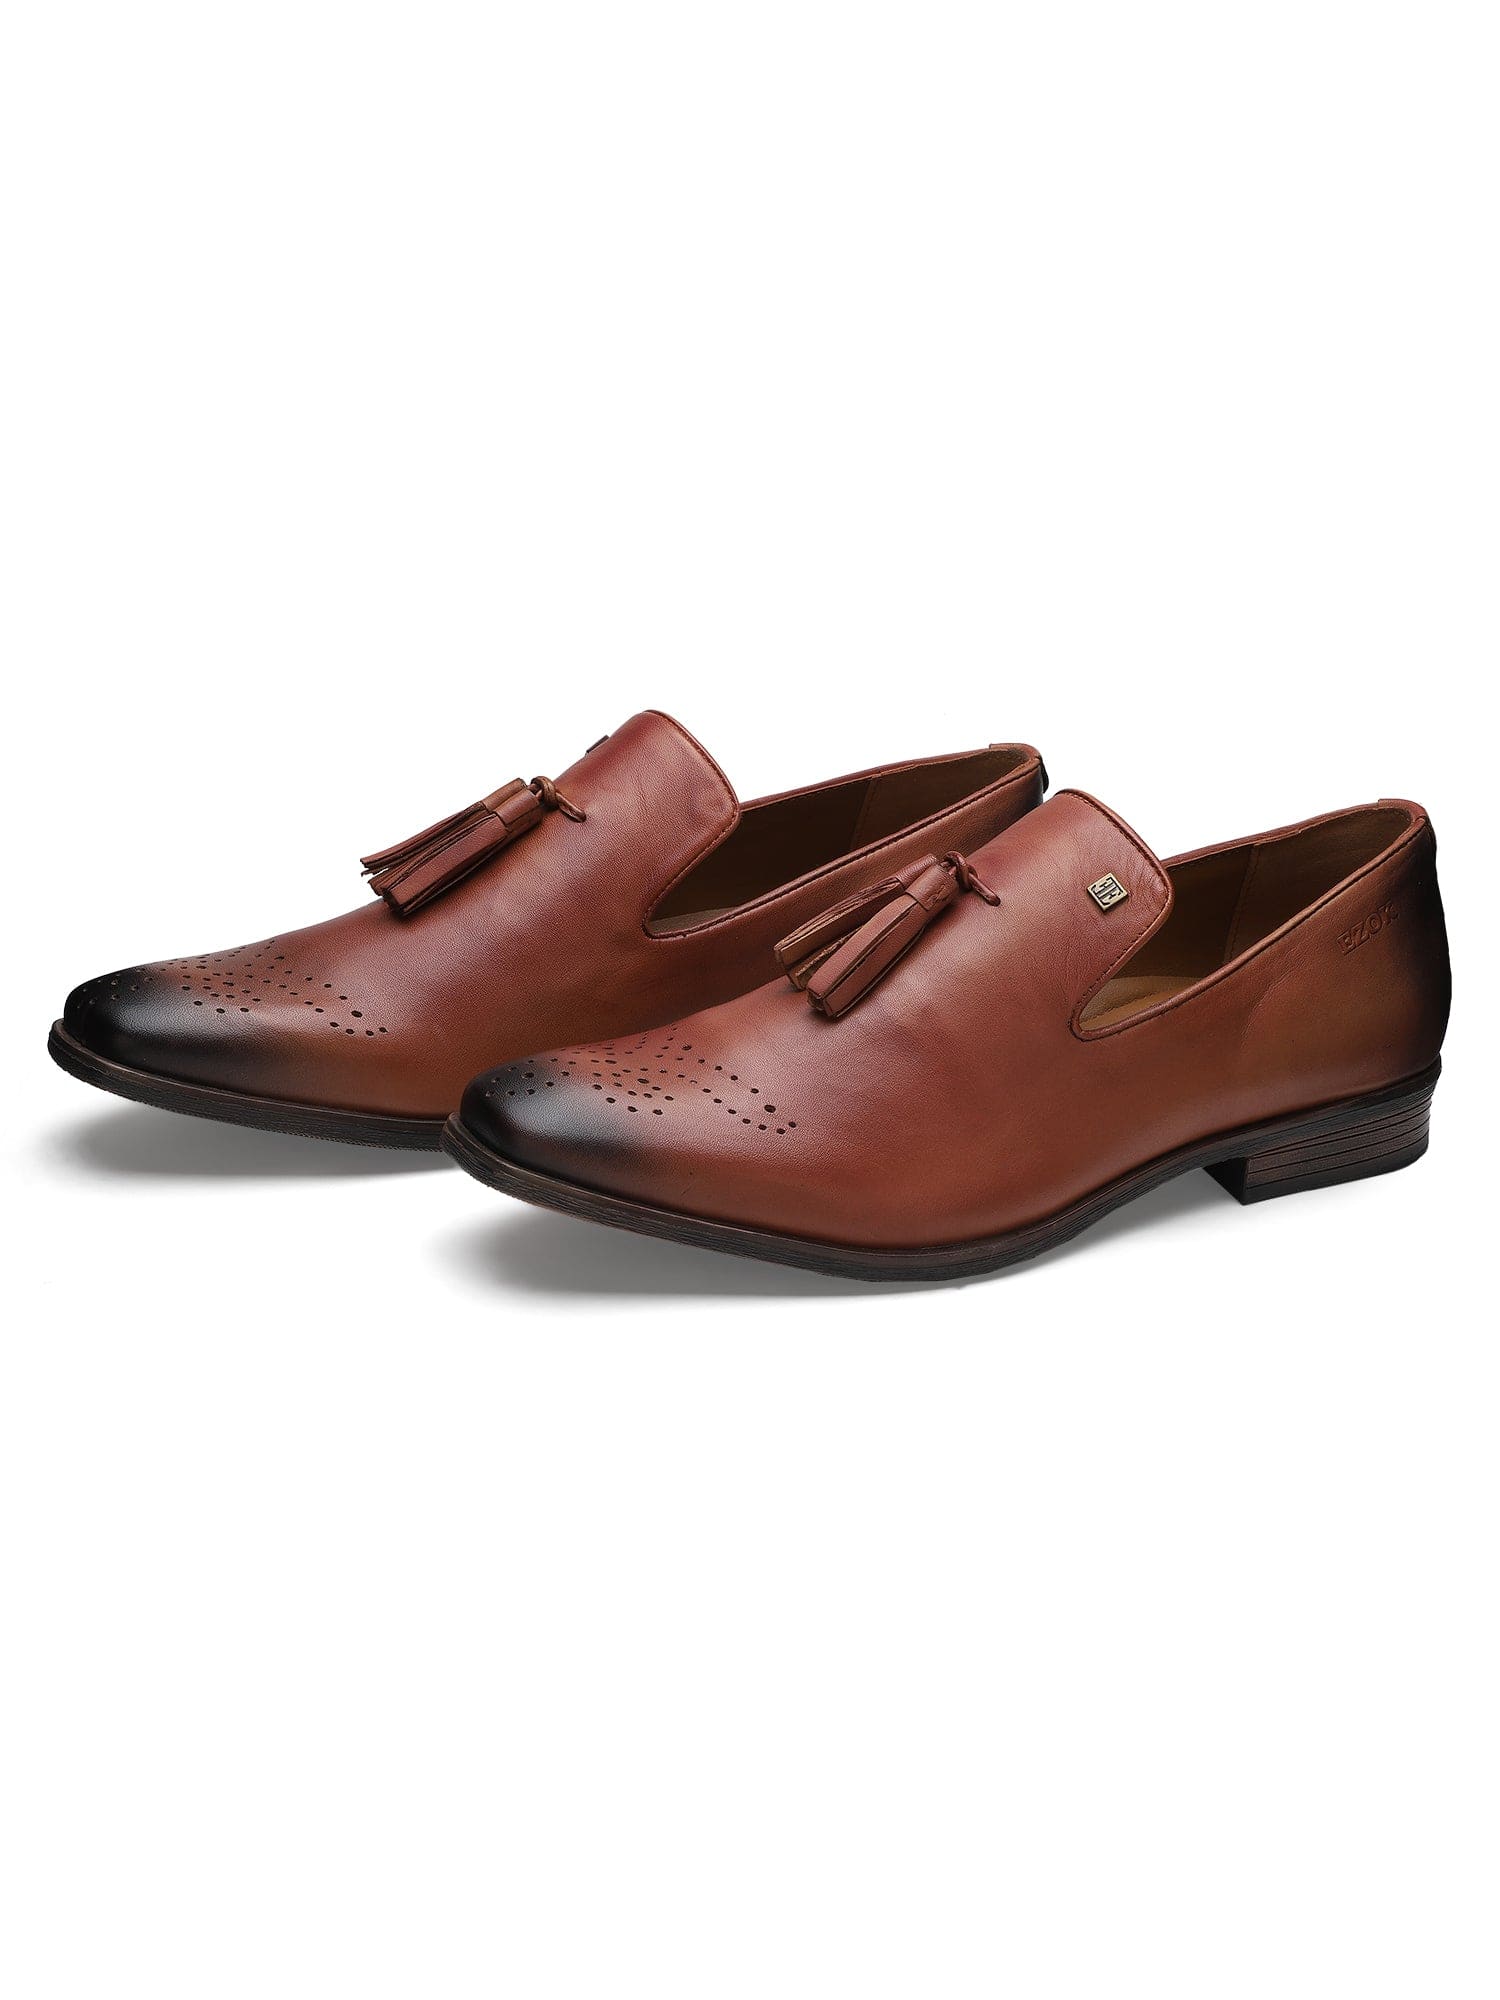 Ezok Men Bordo Leather Loafers Shoes 2052